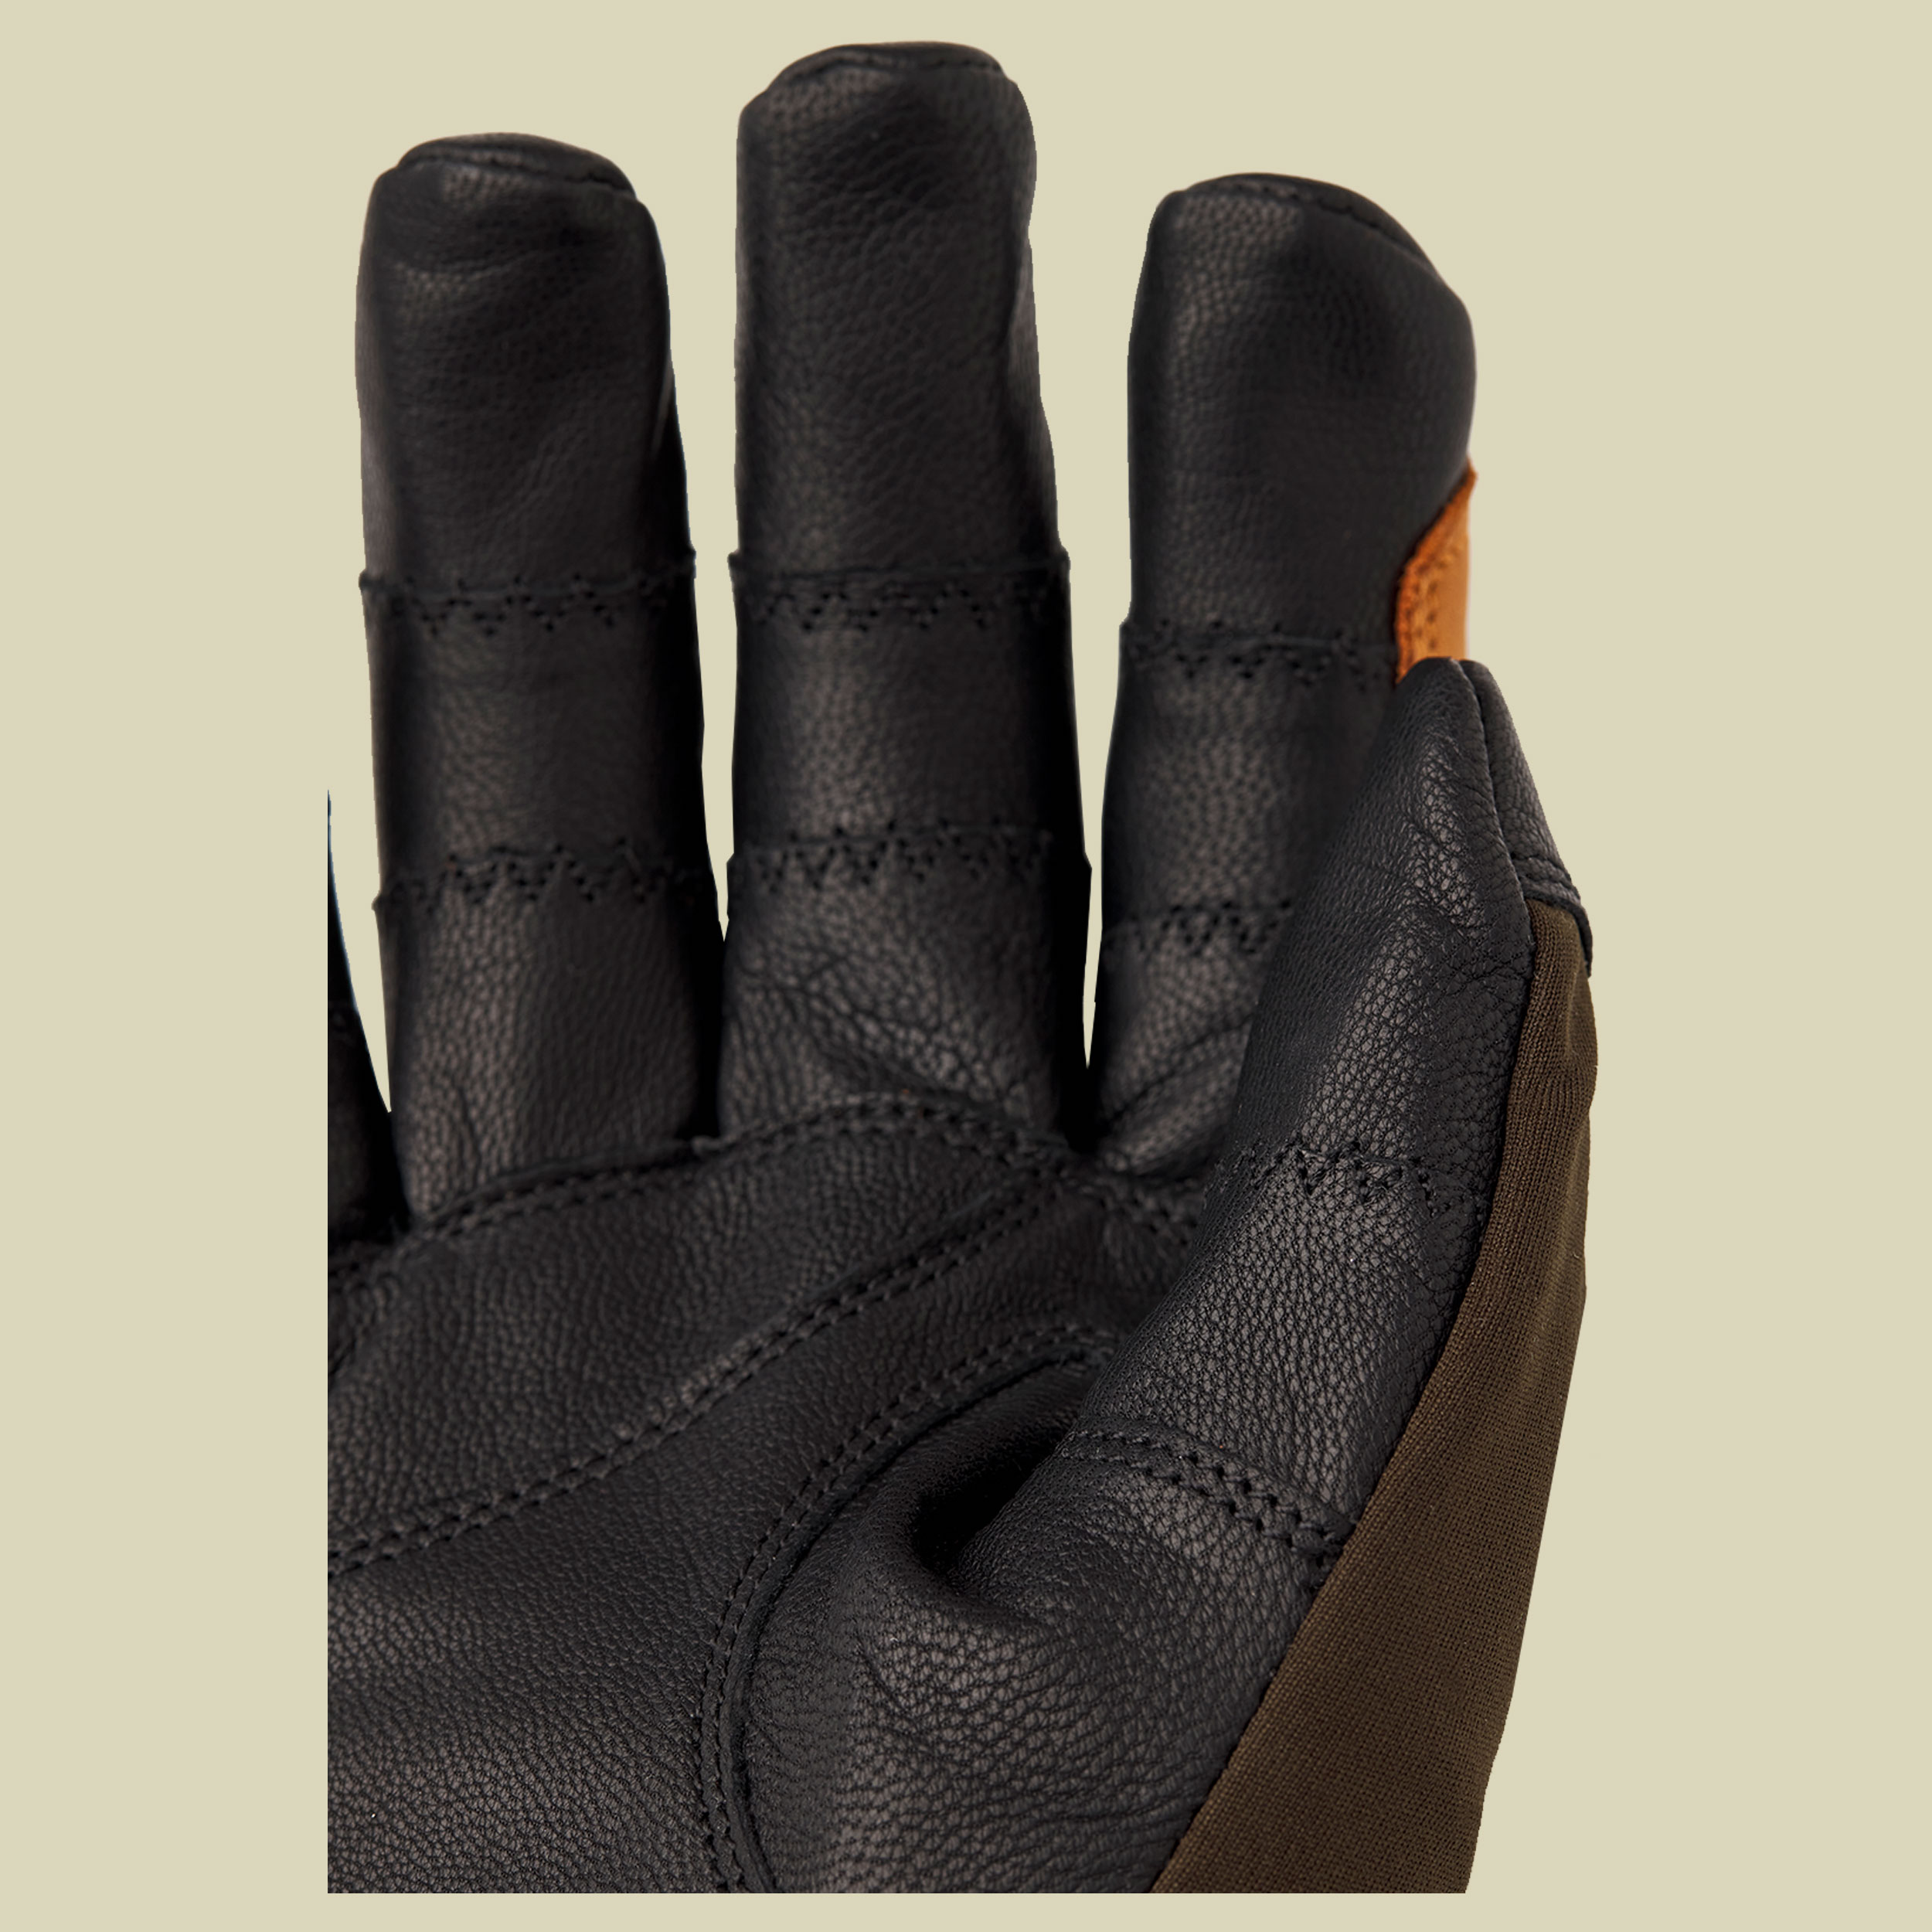 Ergo Grip Active Wool Terry Größe 8 Farbe dark forest/black